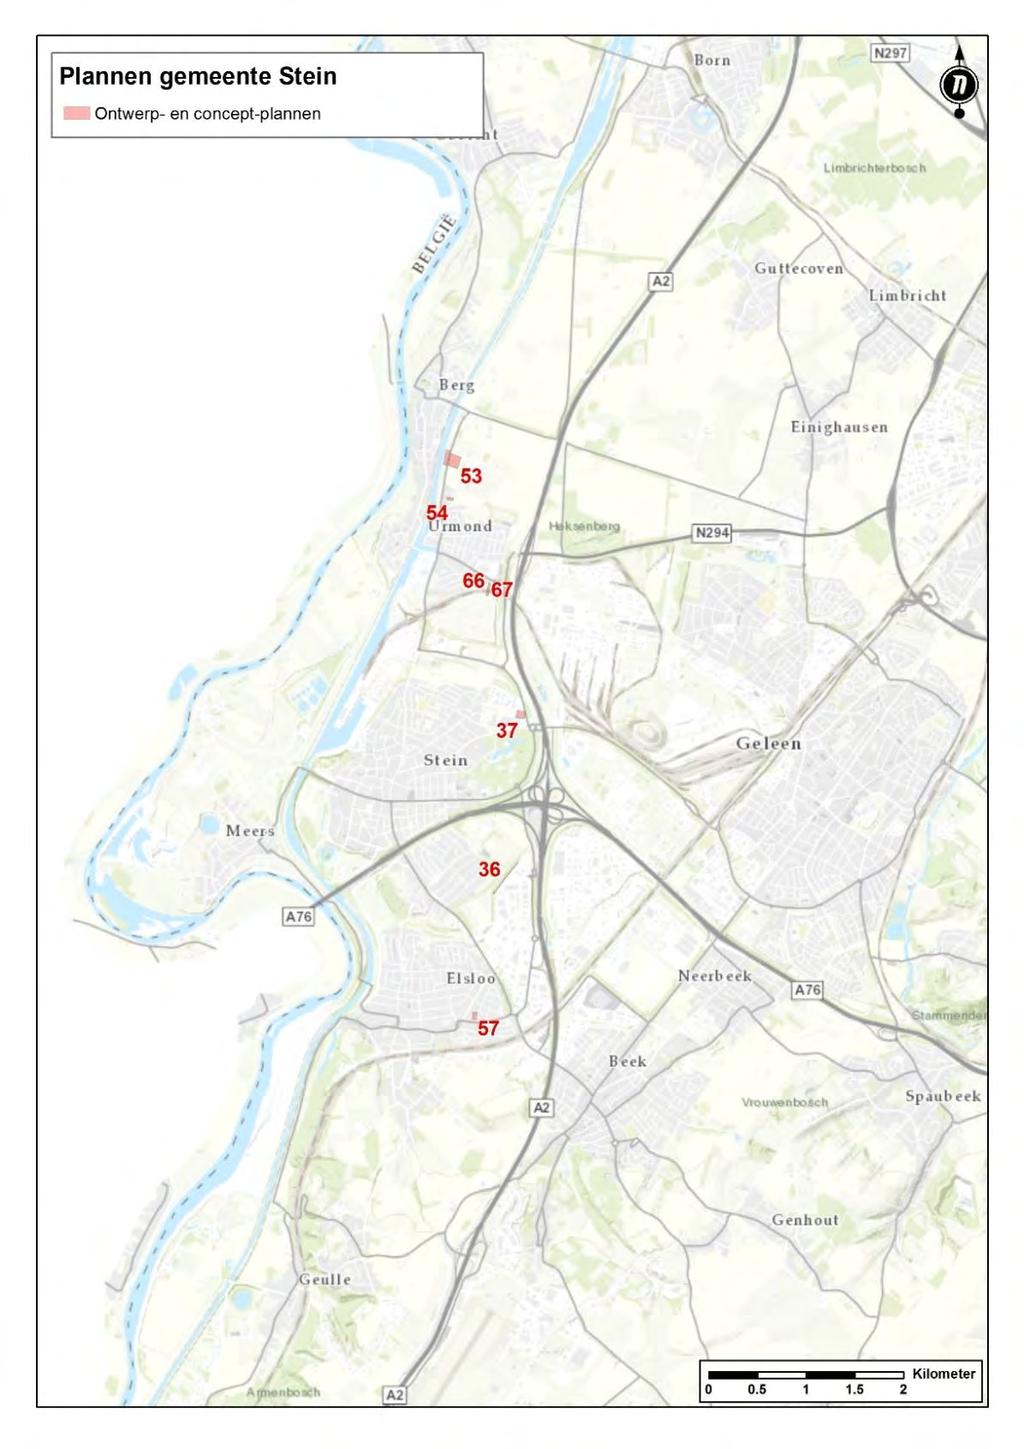 Figuur 24. Concept- en ontwerpplannen in de gemeente Stein Onderstaande tabel geeft de relevante plannen aangeduid in de bovenstaande kaart.